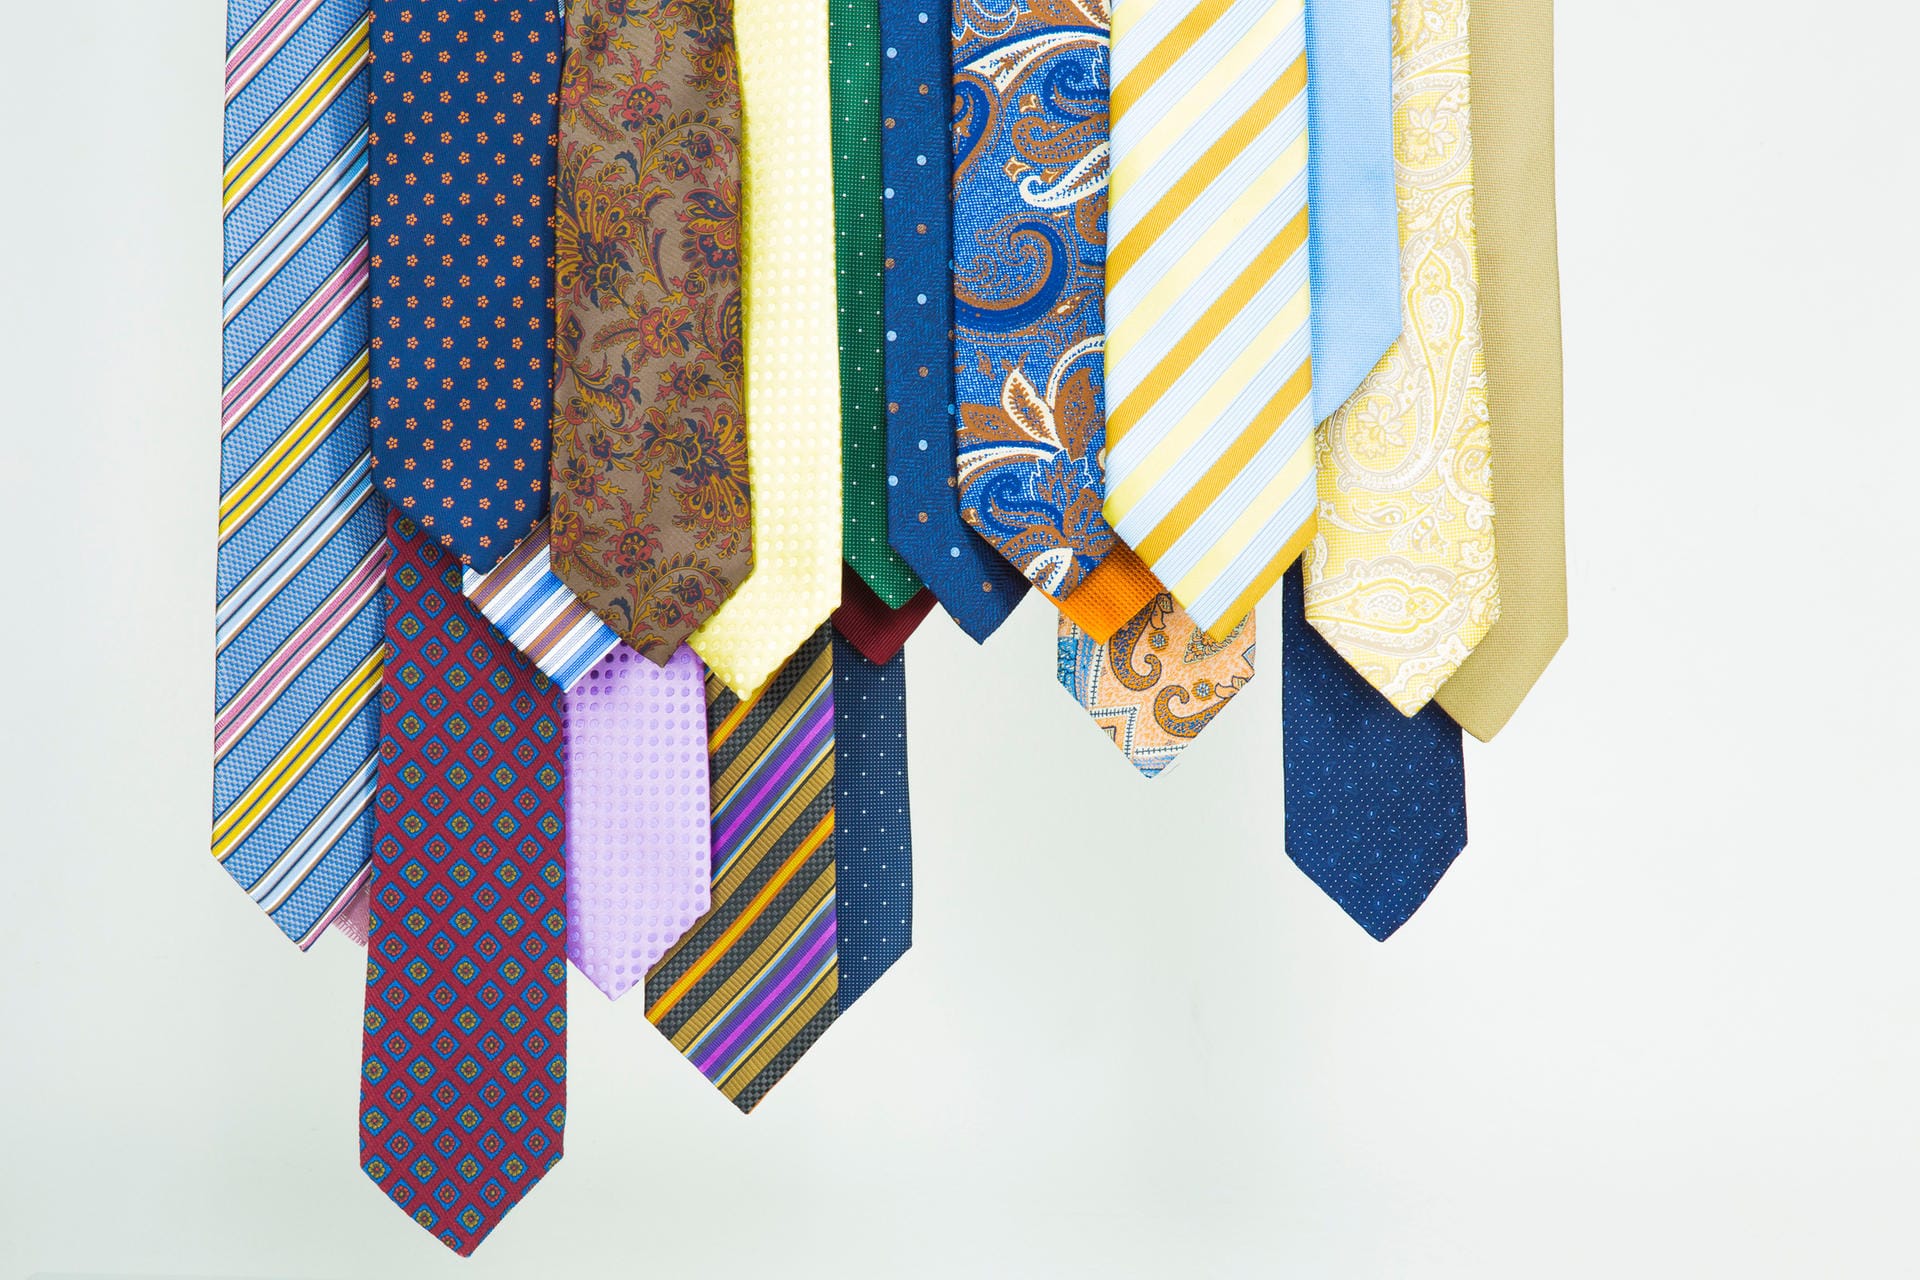 Kunterbunte Krawatten-Muster tragen entweder Exzentriker oder stillose Modebanausen.